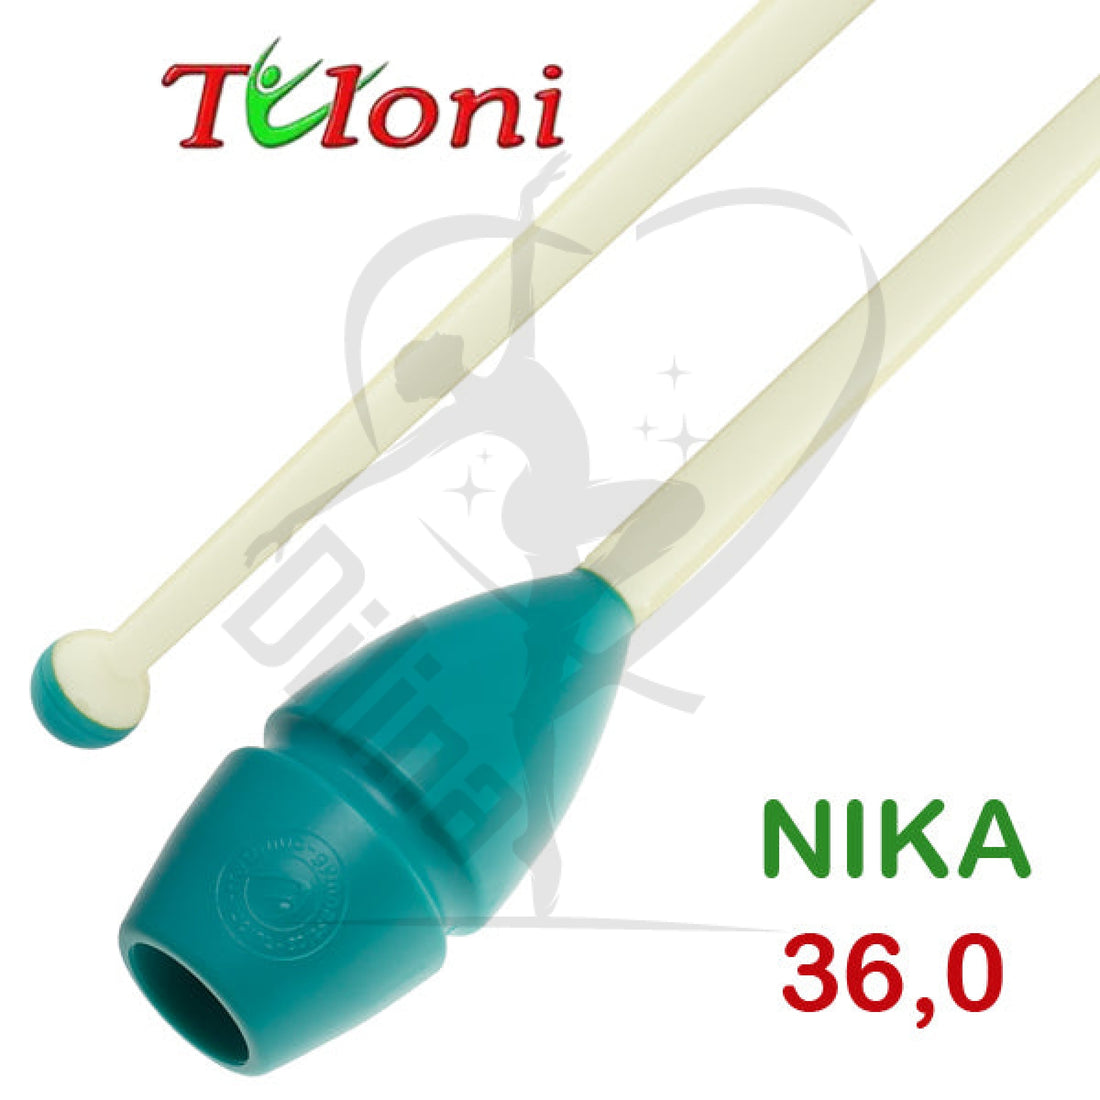 Tuloni Bi-Colour Connectable Clubs Mos. Nika 36Cm Turquoise X White